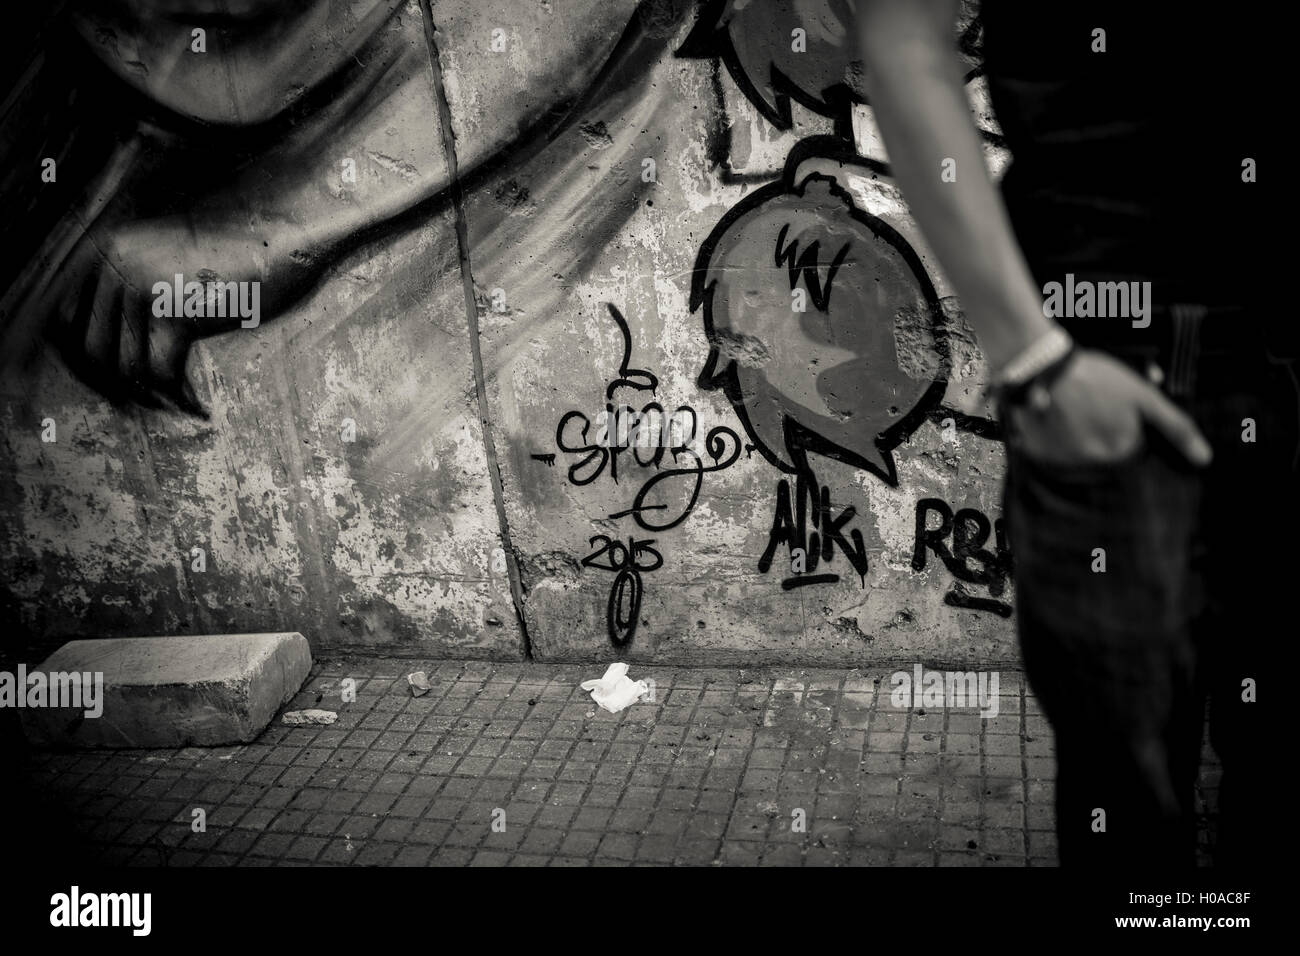 Les graffitis à Beyrouth - 10/11/2015 - Liban / Beyrouth - Mar Mikhail, Beyrouth, novembre 2015. Tag par Spaz. - Bilal Tarabey / Le Pictorium Banque D'Images